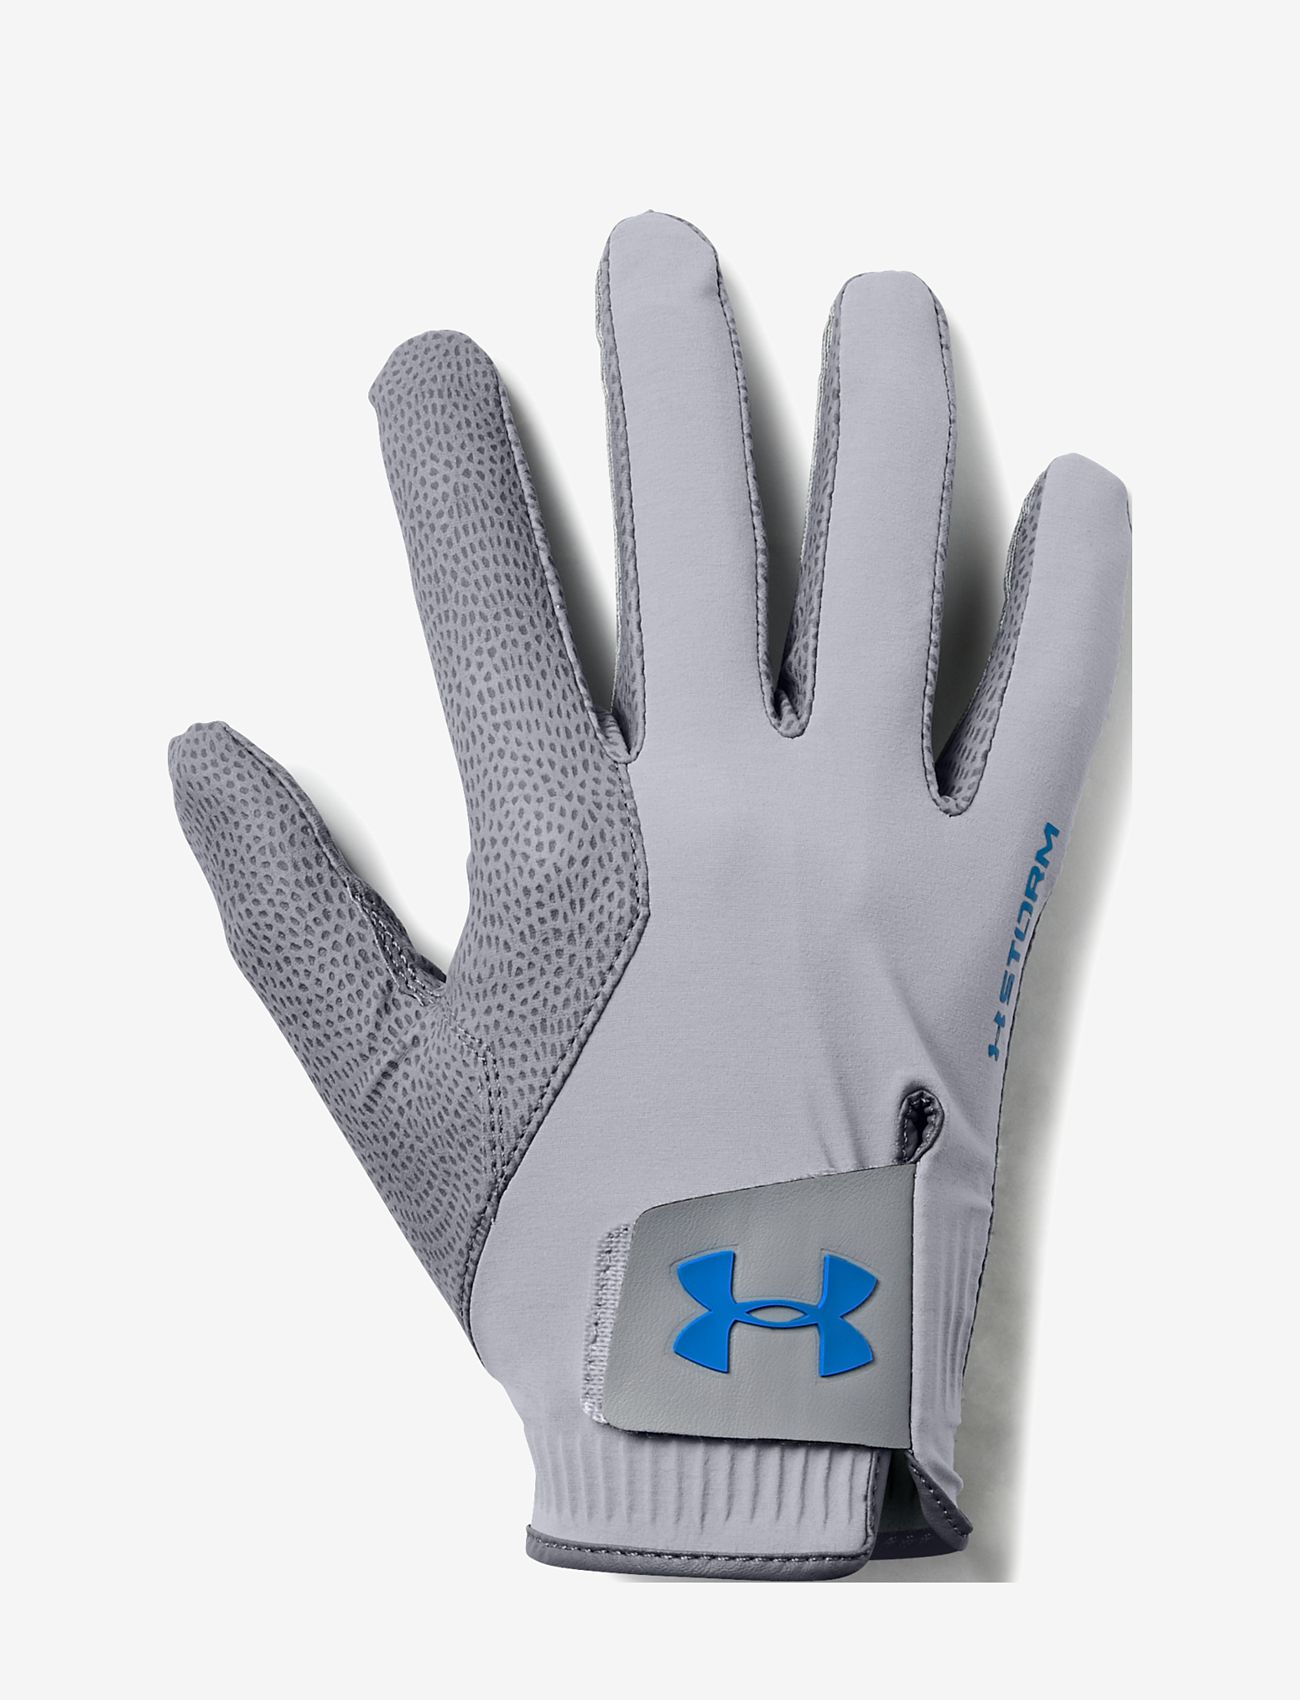 Under Armour Ua Storm Golf Gloves - Handsker & Vanter |